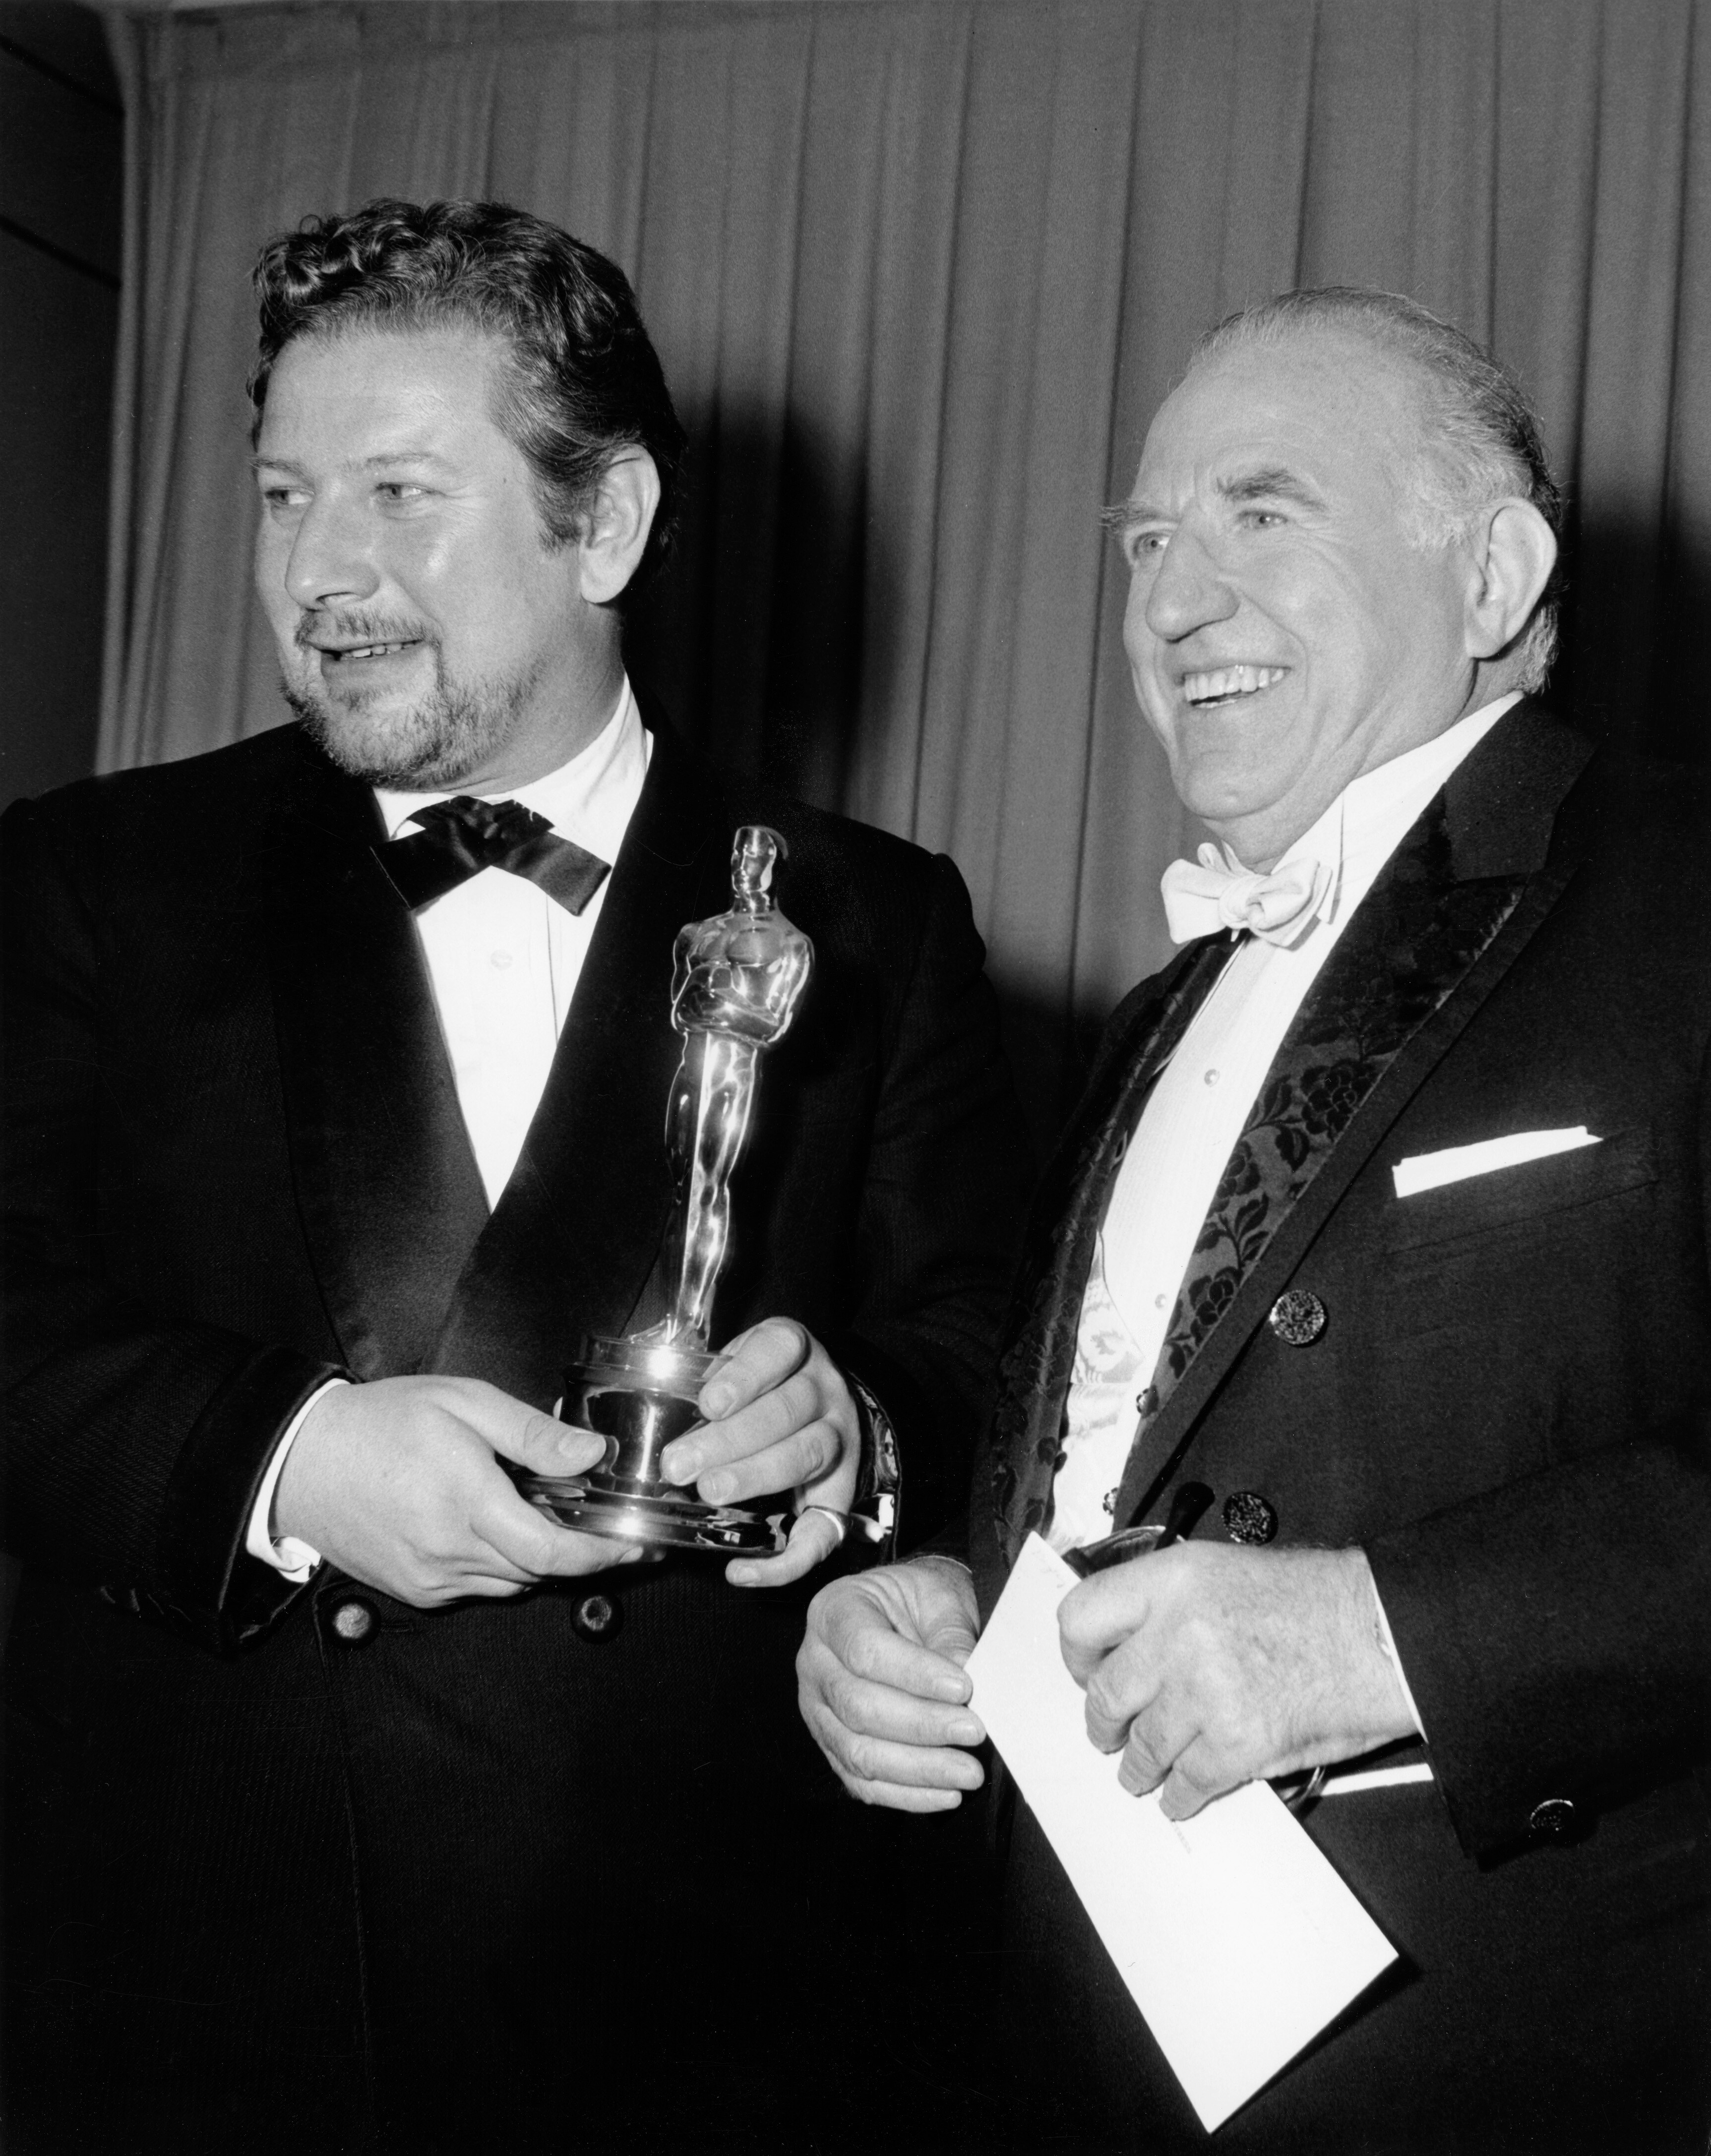 Il secondo Oscar nel 1965 come migliore attore non protagonista per il film "Topkapi"